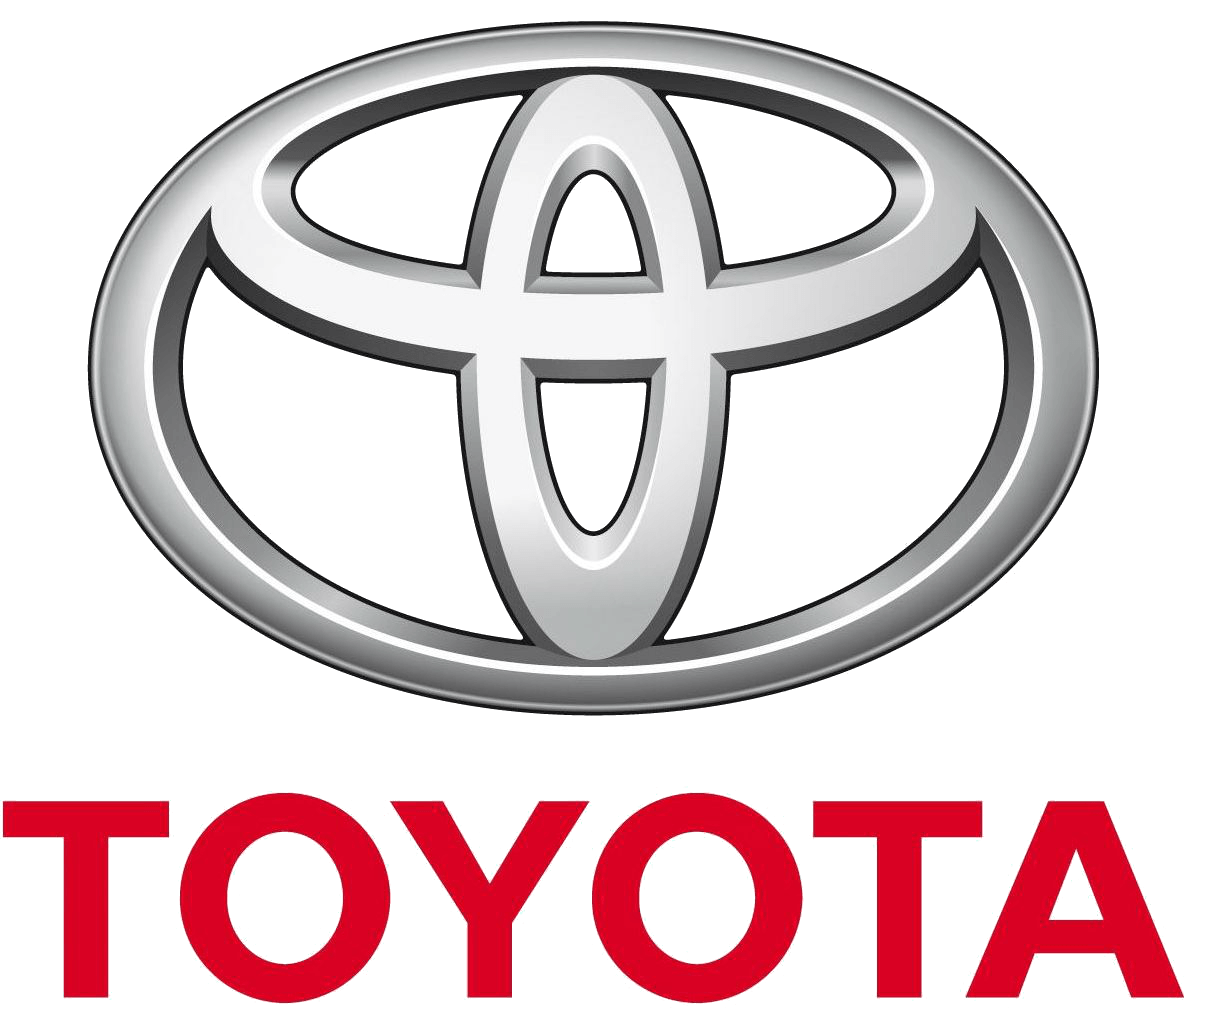 Oval Car Logo - Toyota Logo, Toyota Car Symbol Meaning and History | Car Brand Names.com